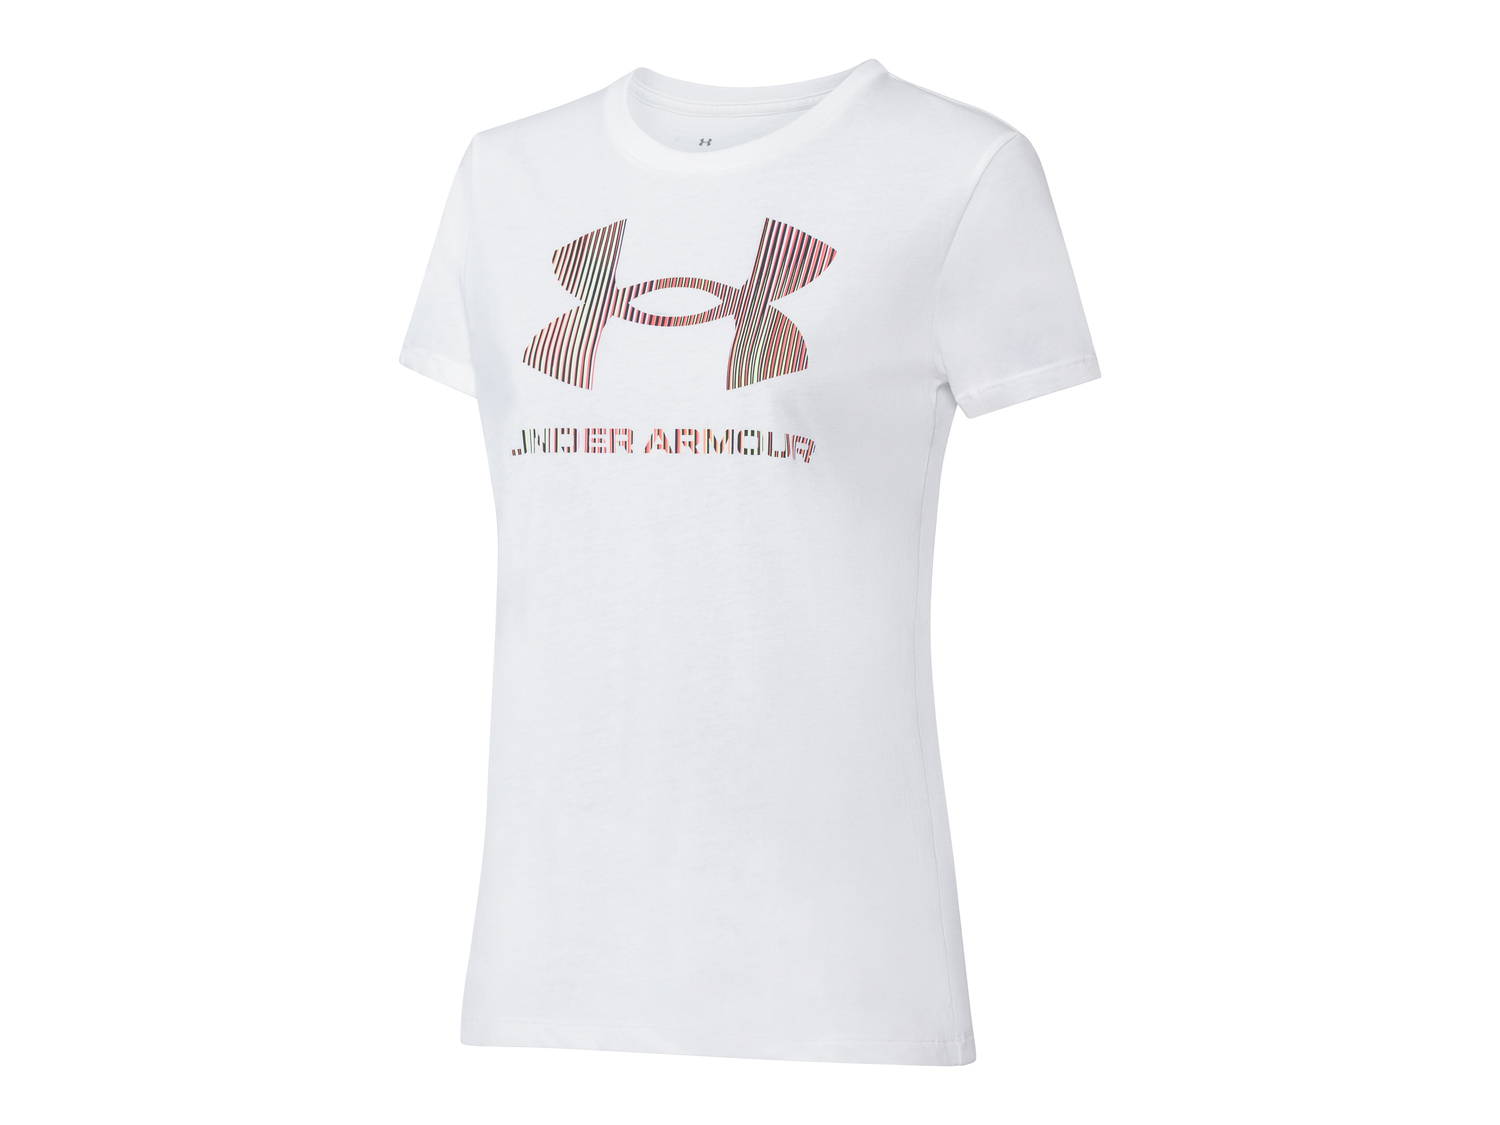 T-shirt sportiva da donna Under Armour, prezzo 19.99 € 
Misure: S-XL
Taglie ...